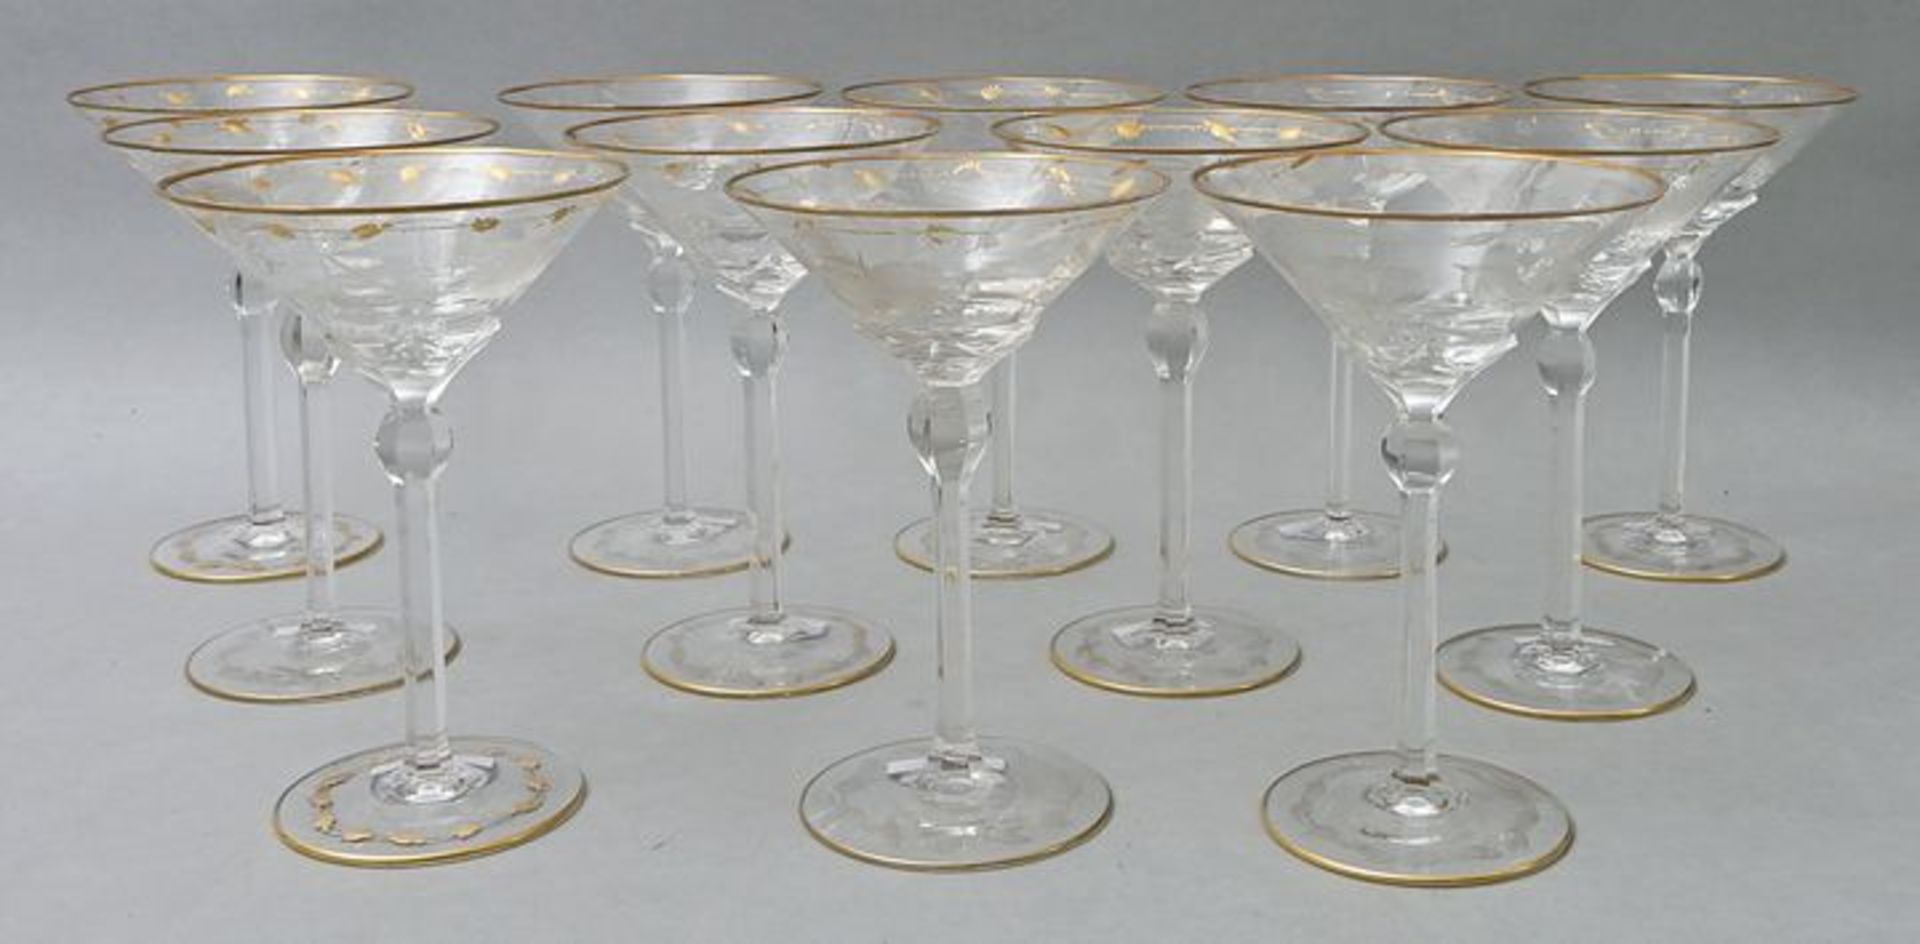 Satz Sektschalen/ champagne glasses